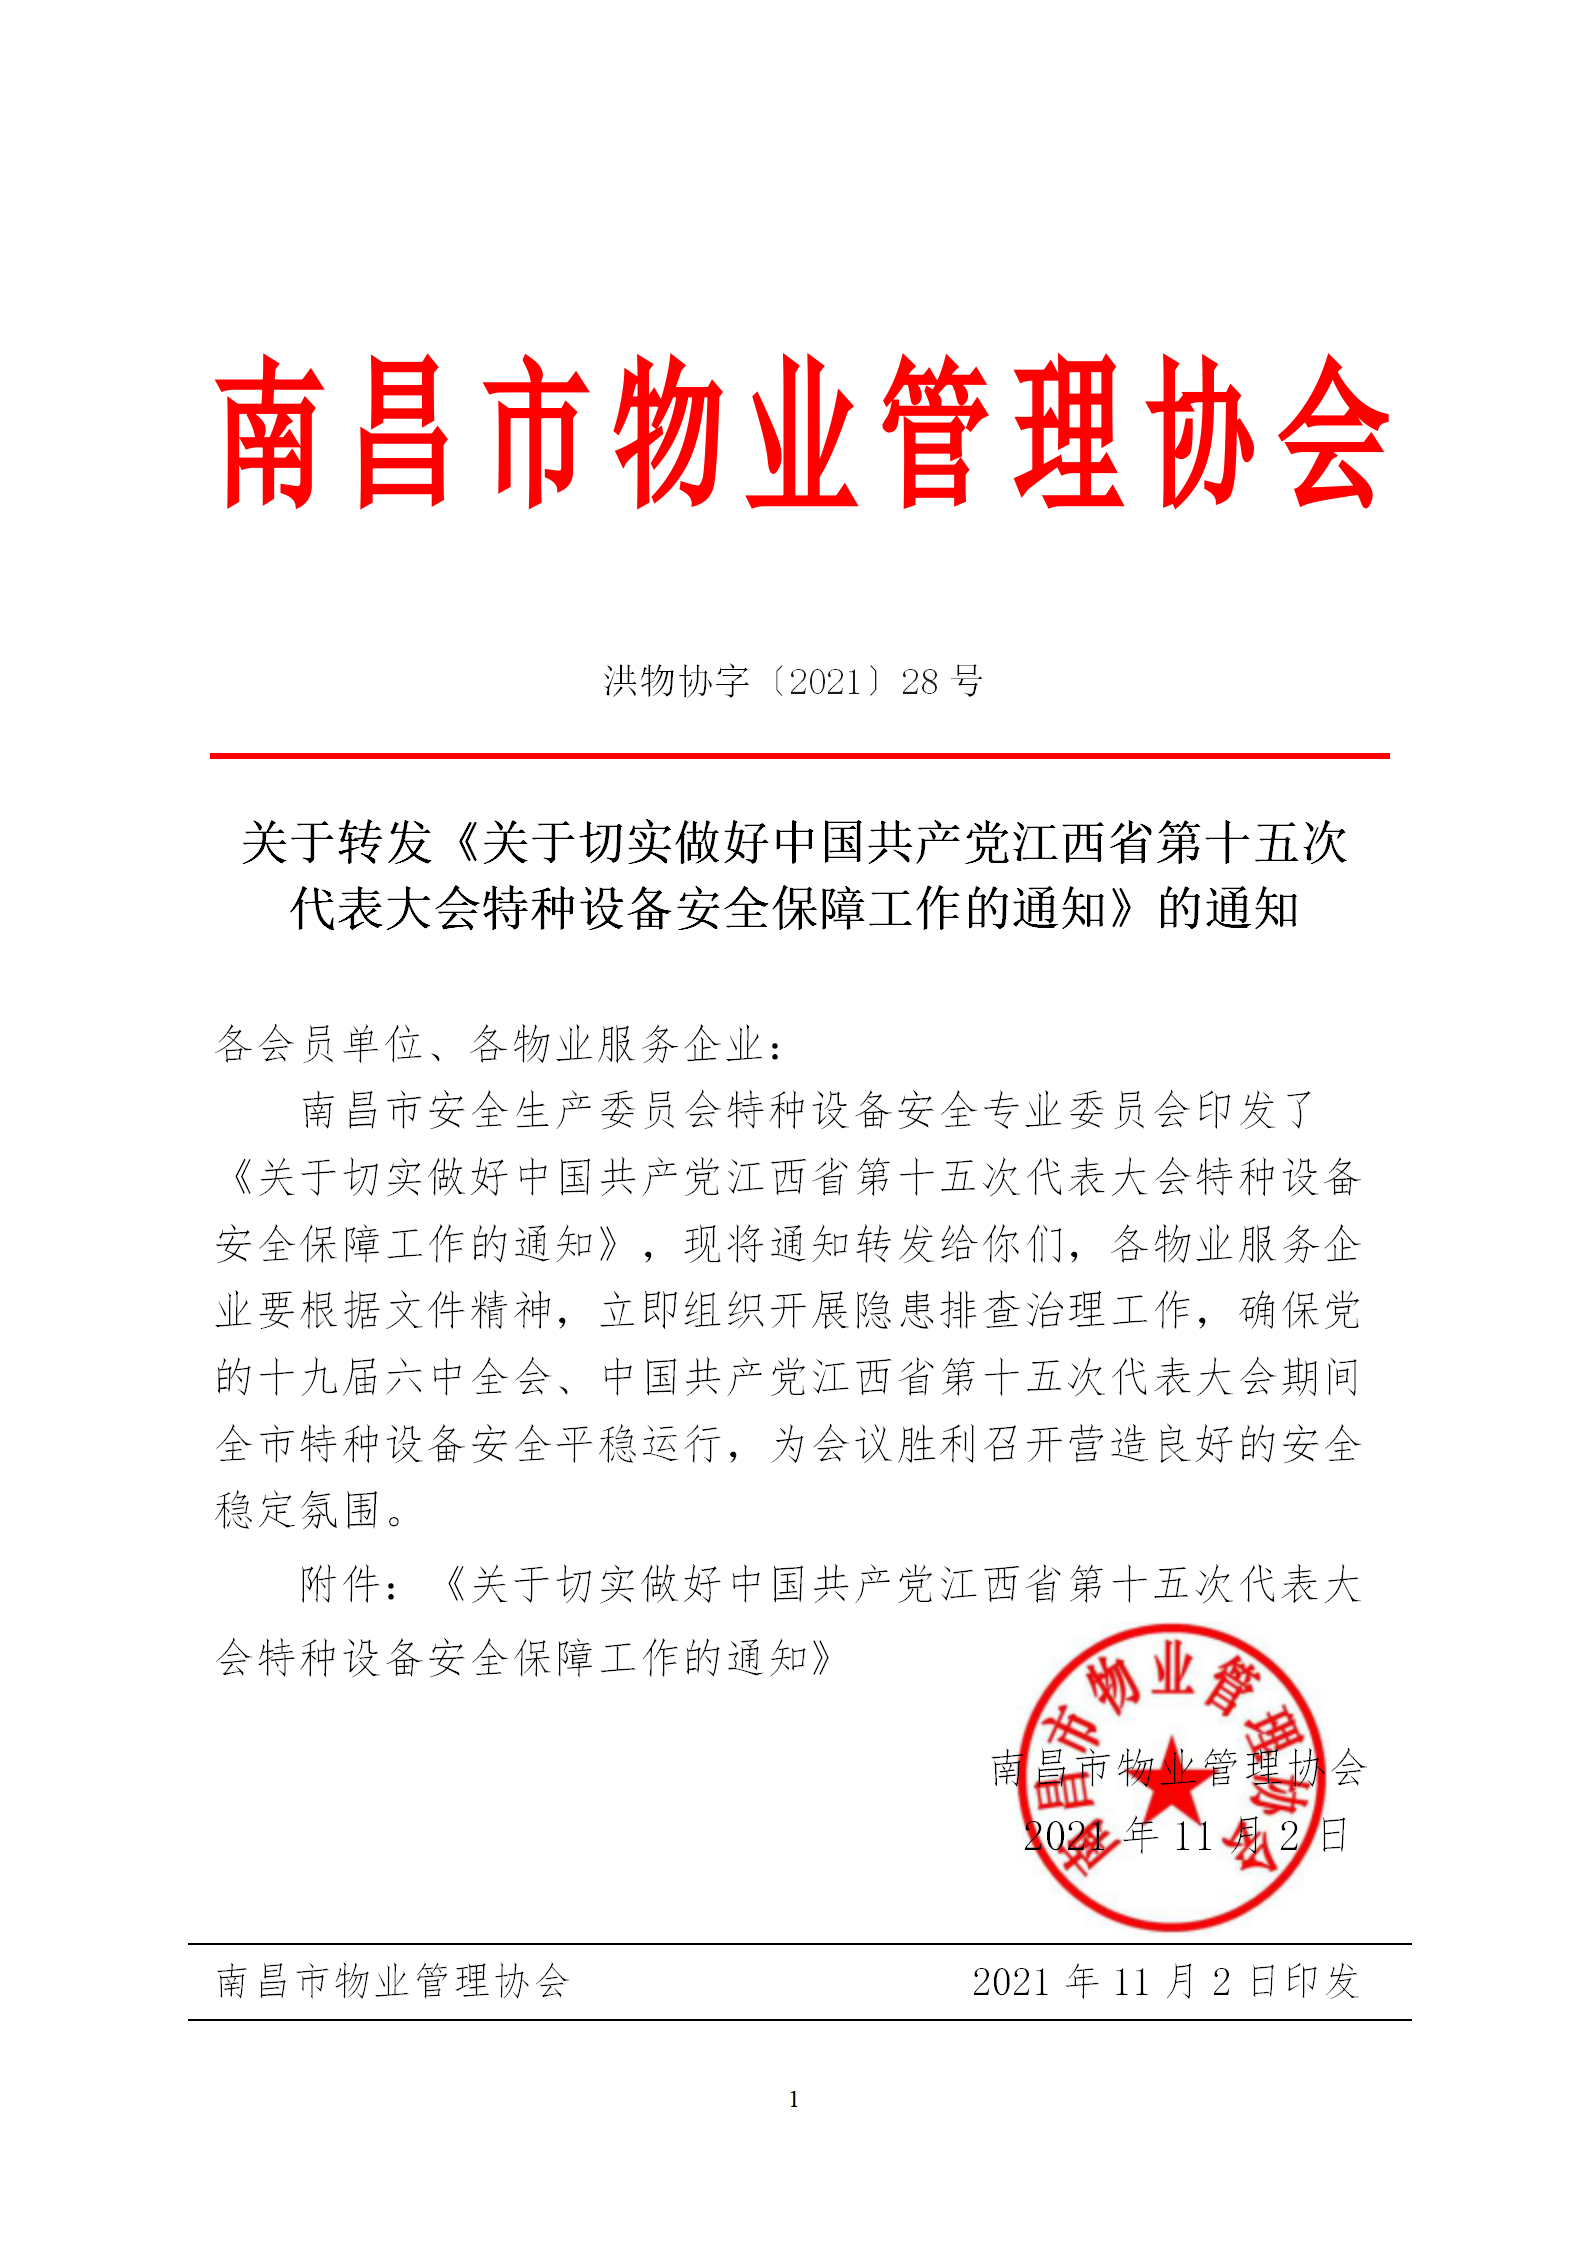 洪物协字[2021]28号 关于转发《关于切实做好中国共产党江西省第十五次代表大会特种设备安全保障工作的通知》的通知_01.png